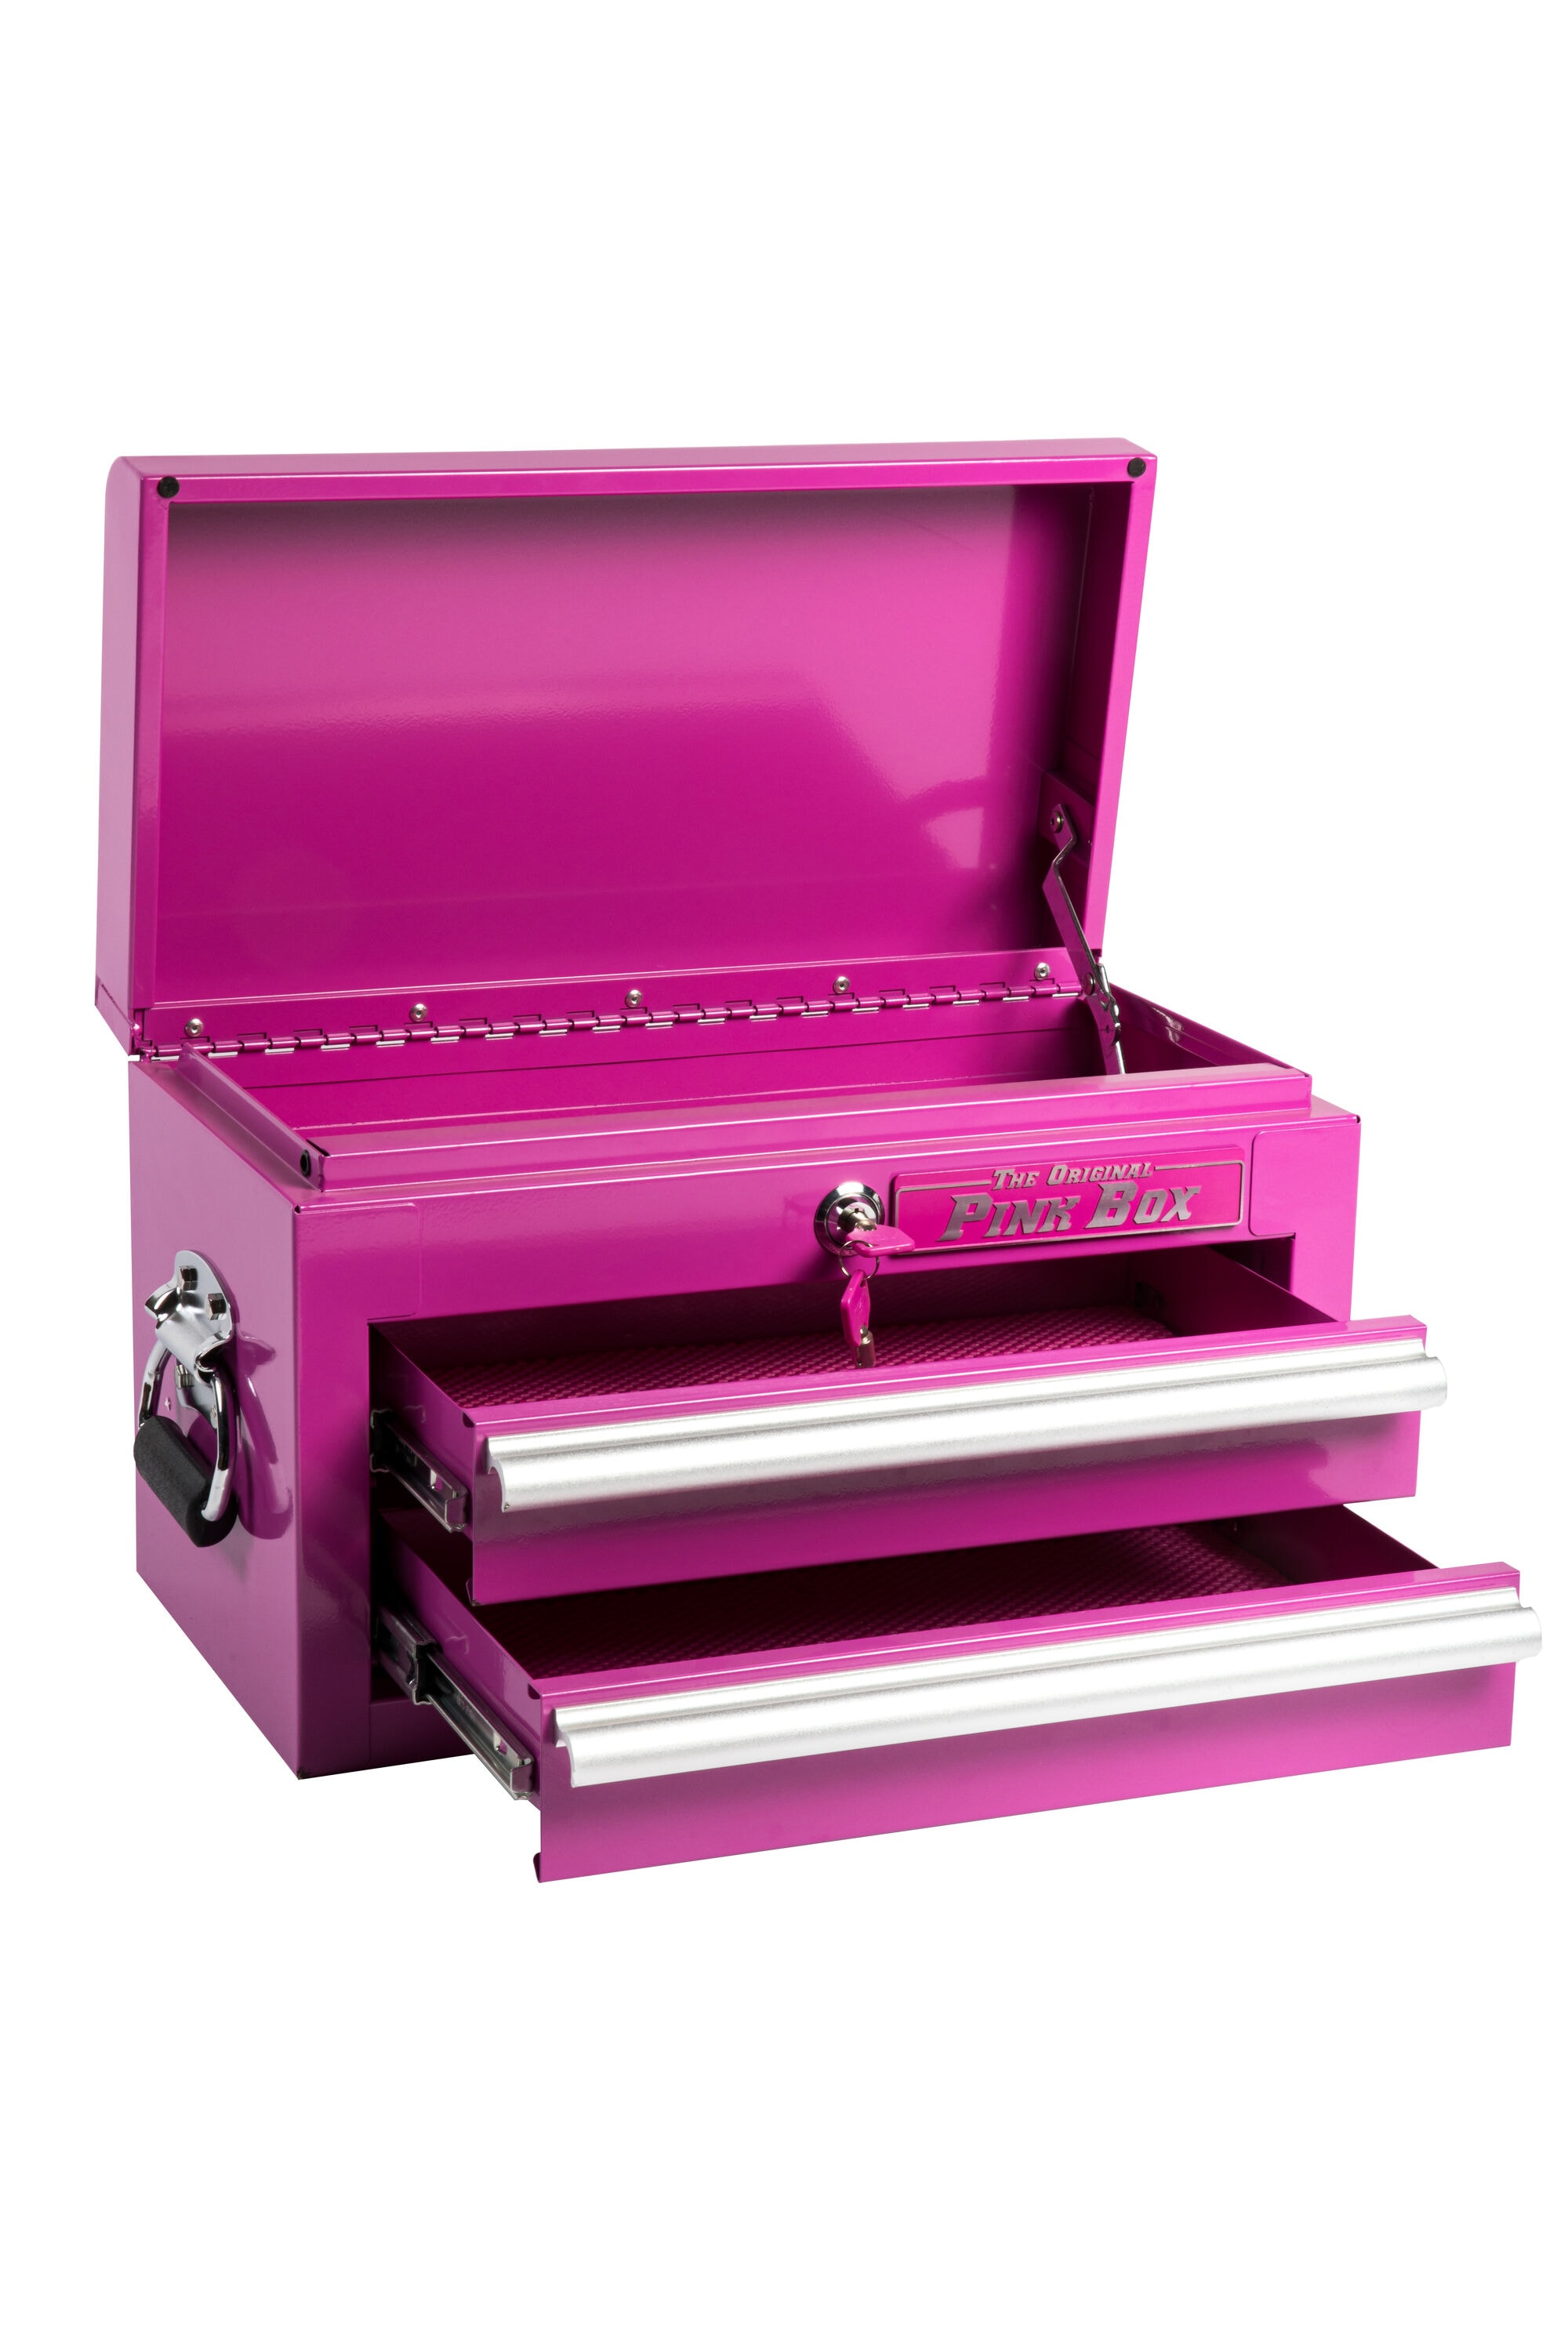 The Original Pink Box 18-in Ball-bearing 2-Drawer Pink Steel